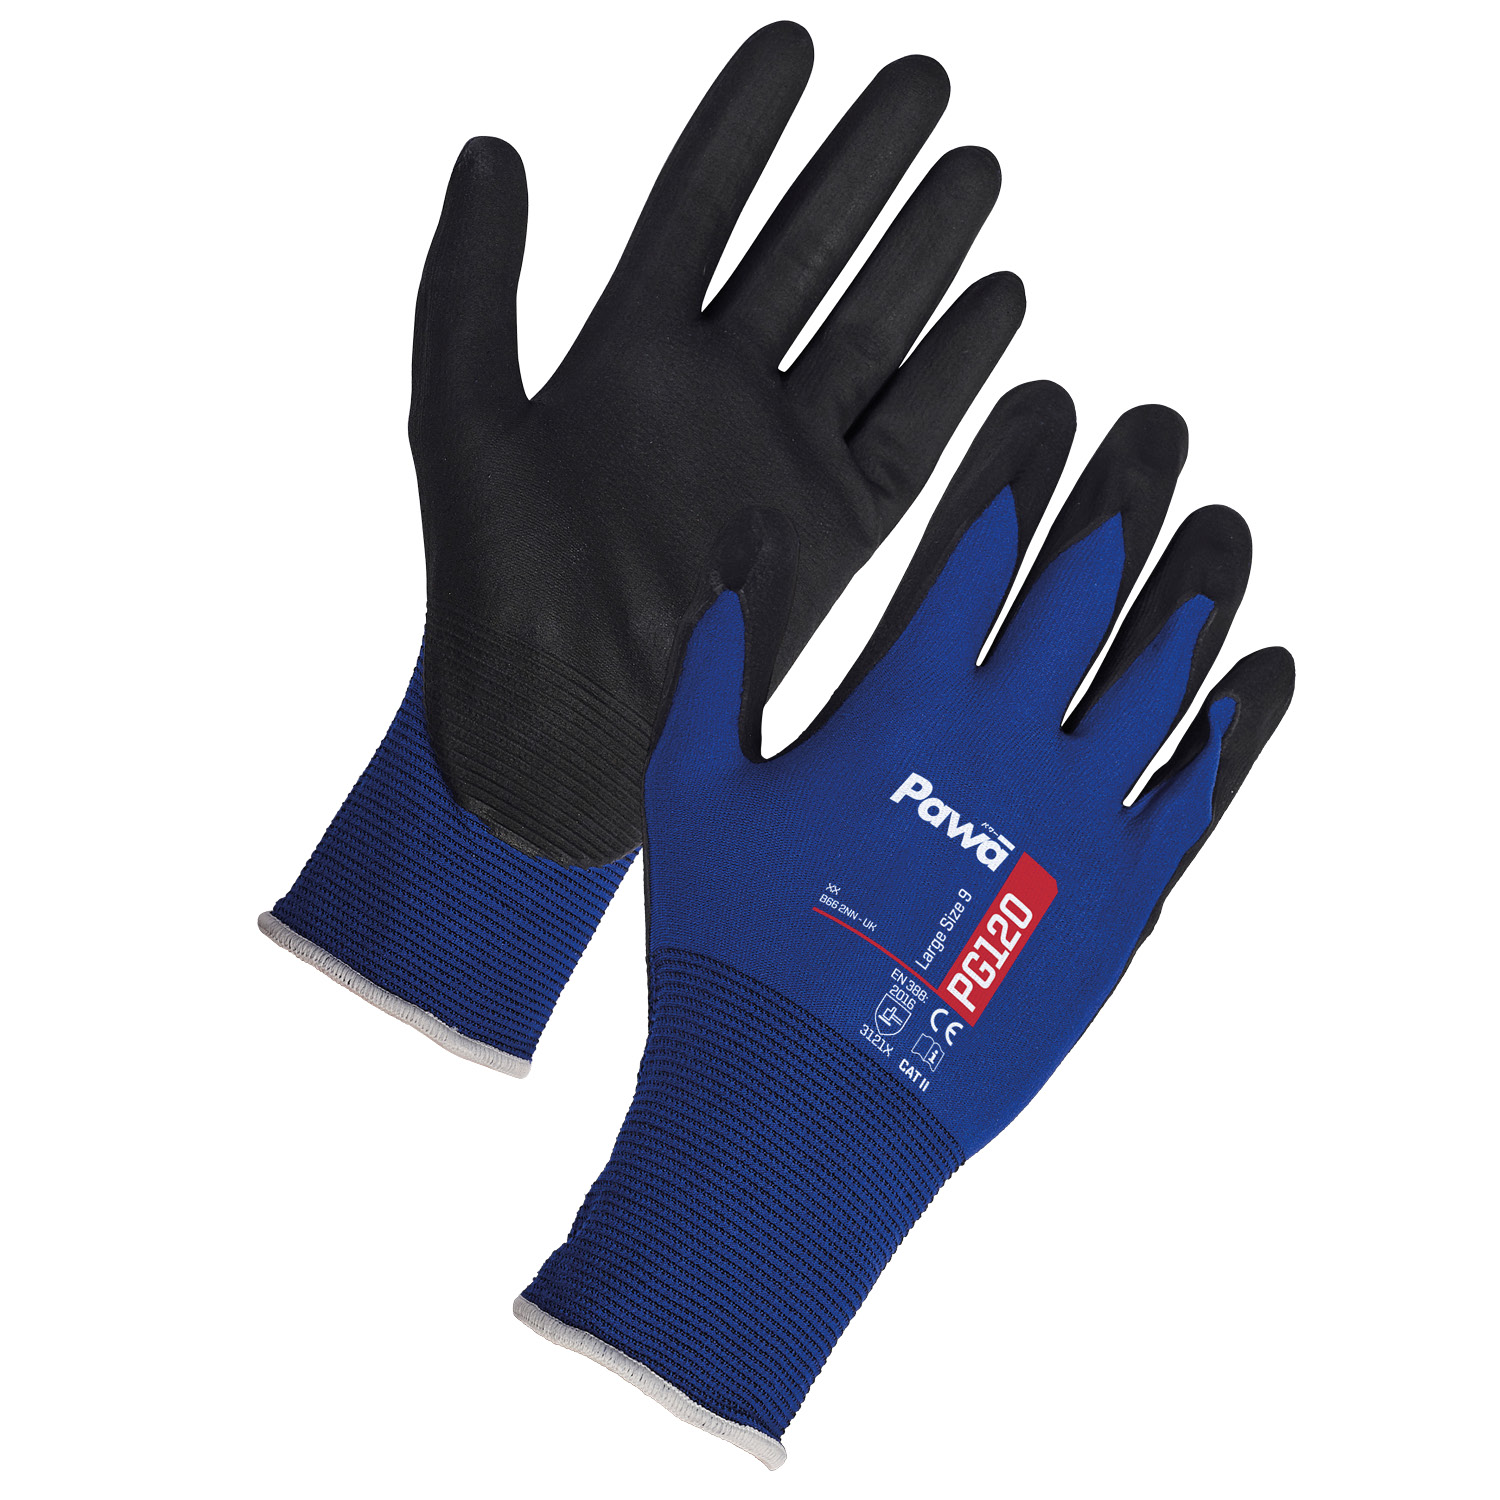 Pawa Gloves 120 - Large